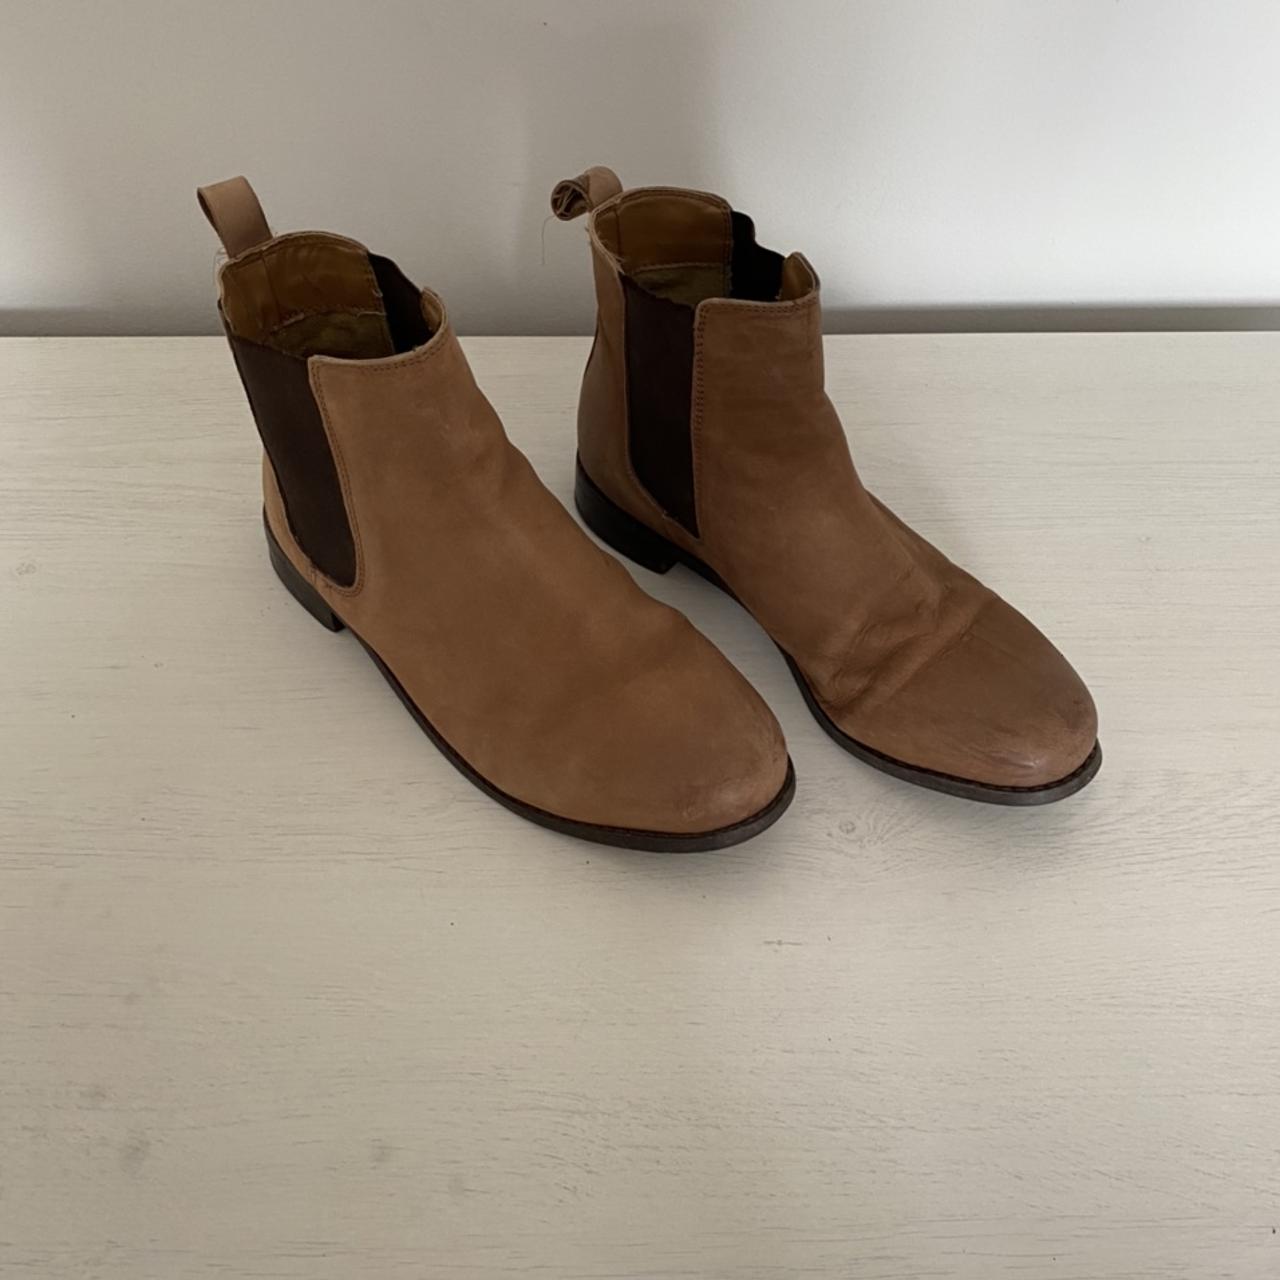 Women’s tan top shop ankle boots - Depop